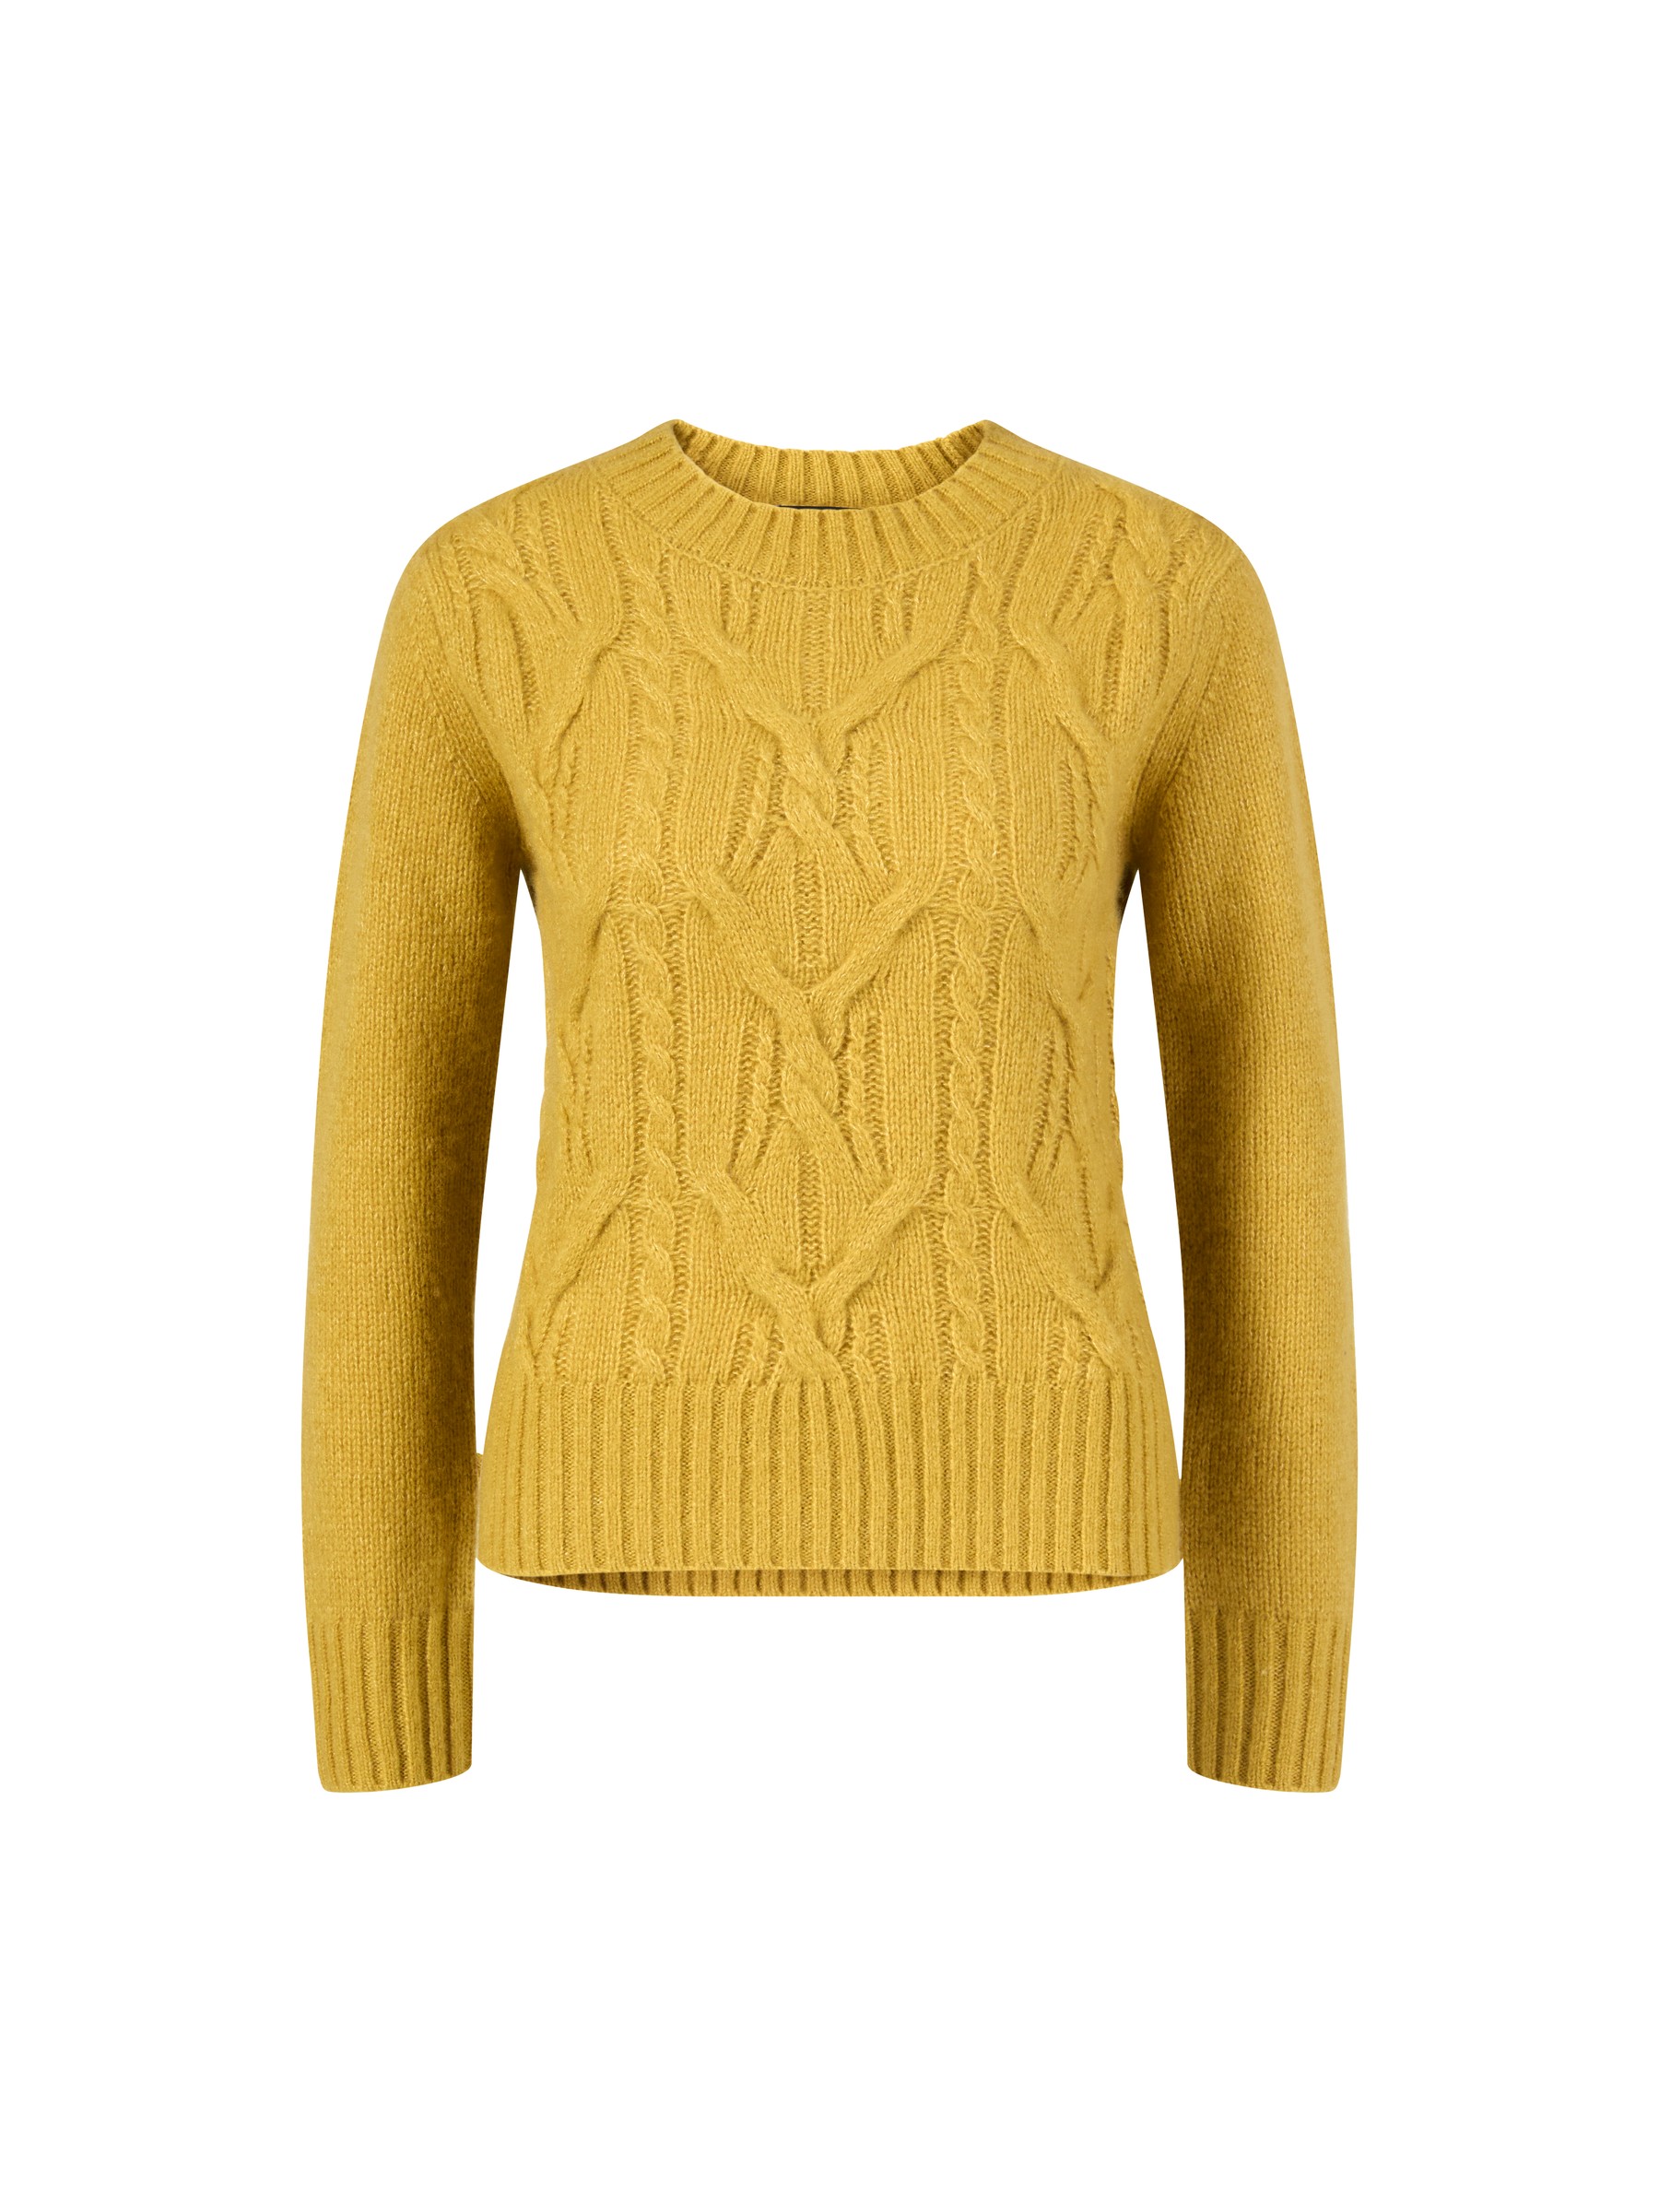 Iris Von Arnim Cashmere-Rundhalspullover Sage Gelb Damen Bekleidung Pullover und Strickwaren Ärmellose Pullover 